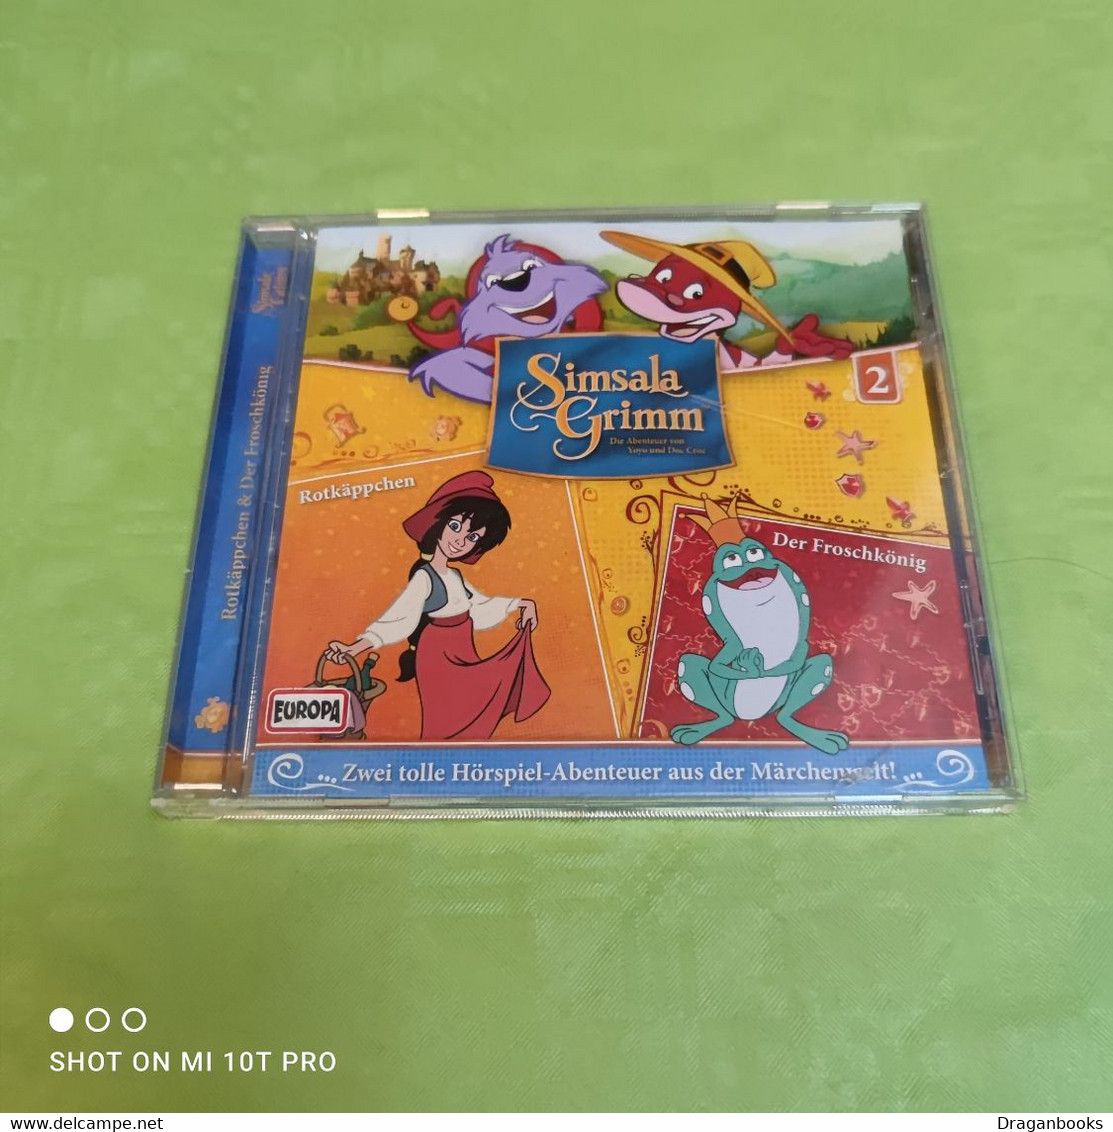 Simsala Grimm - Rotkäppchen / Der Froschkönig - CDs